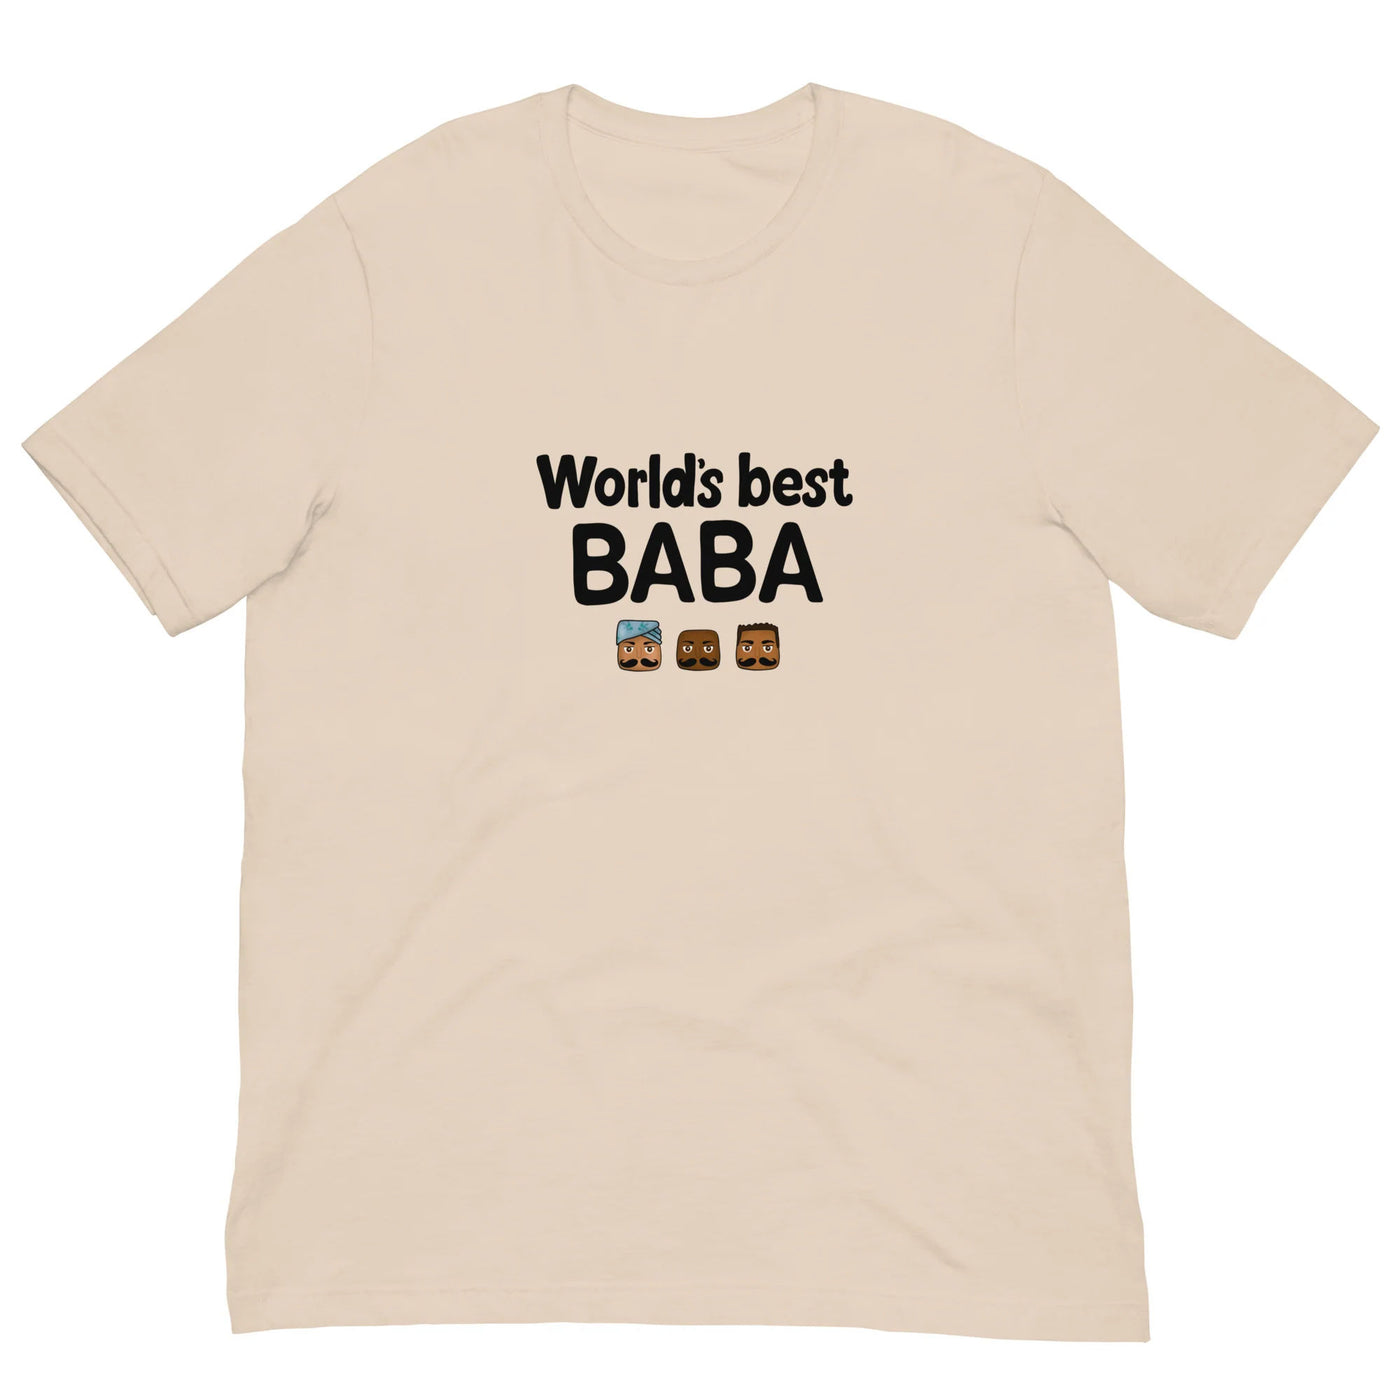 World's Baba T-shirt